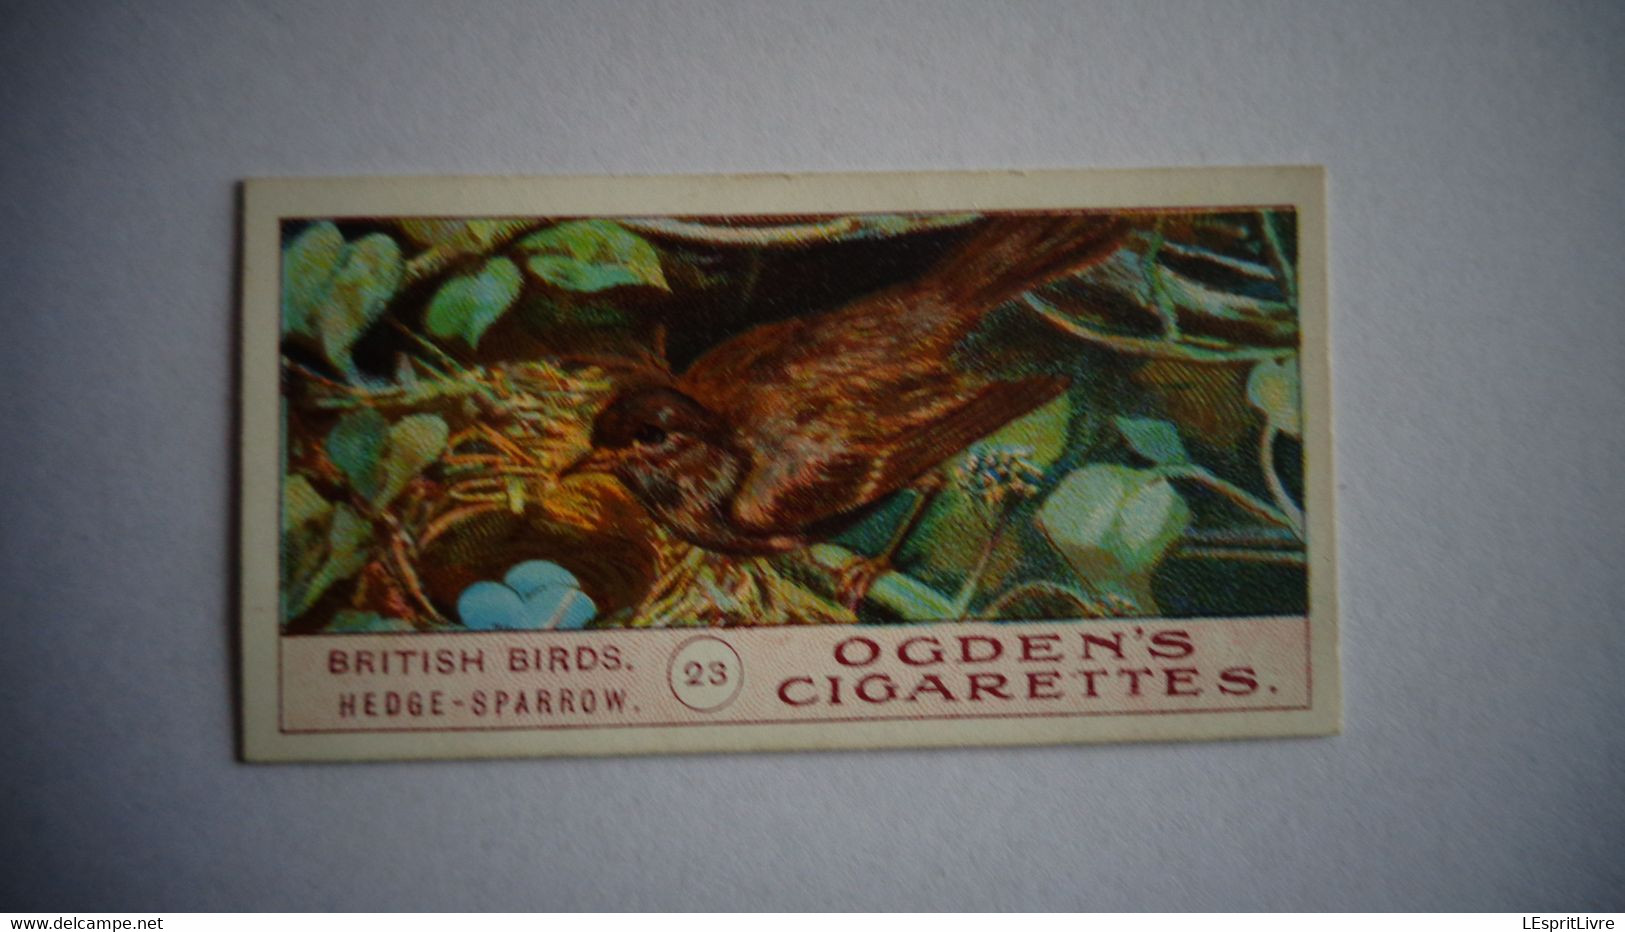 BRITISH BIRDS N° 23 HEDGE SPARROW  Oiseau Bird  Cigarettes OGDEN'S Tobacco Vignette Trading Card Chromo - Ogden's